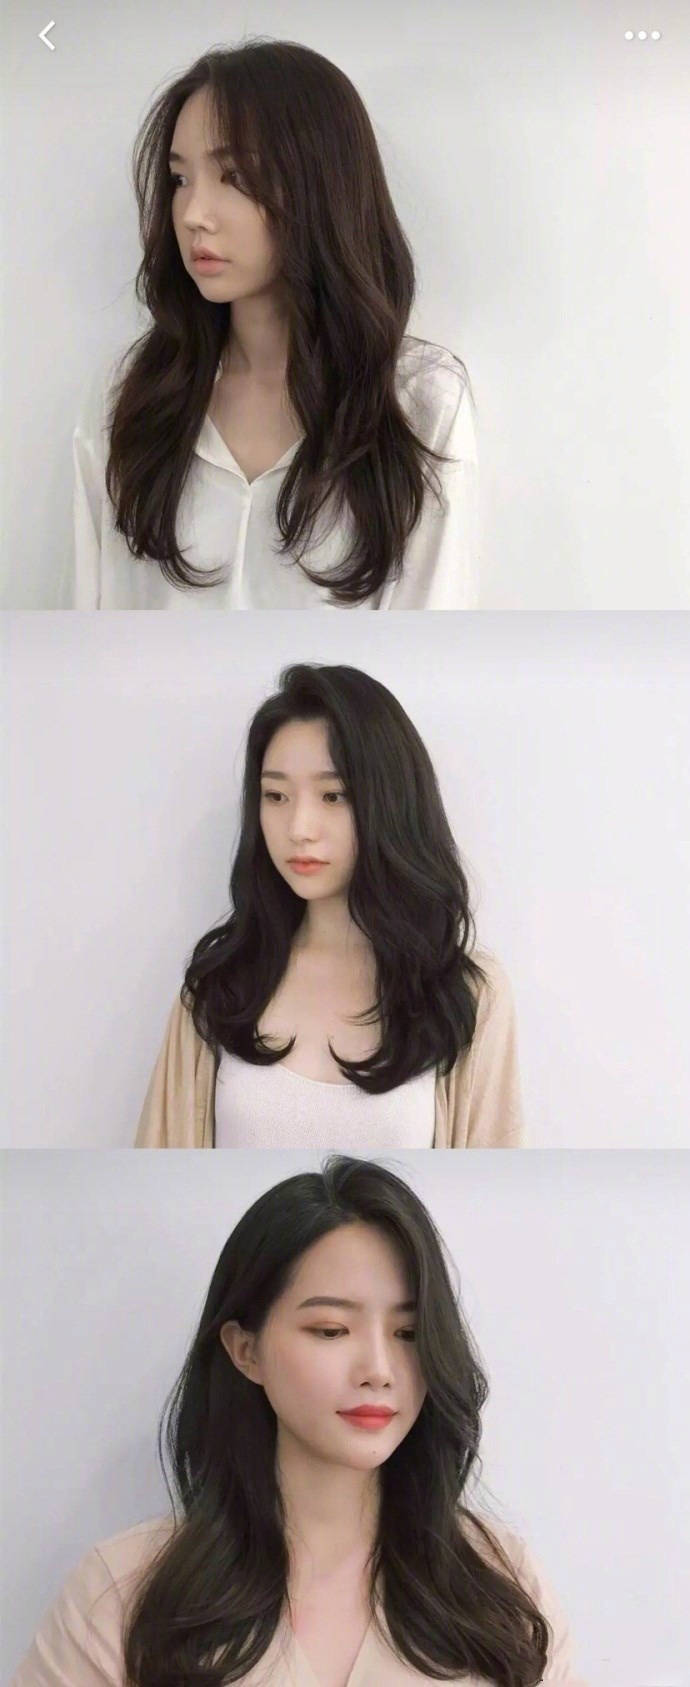 髮型作品參考:女士韓式髮型